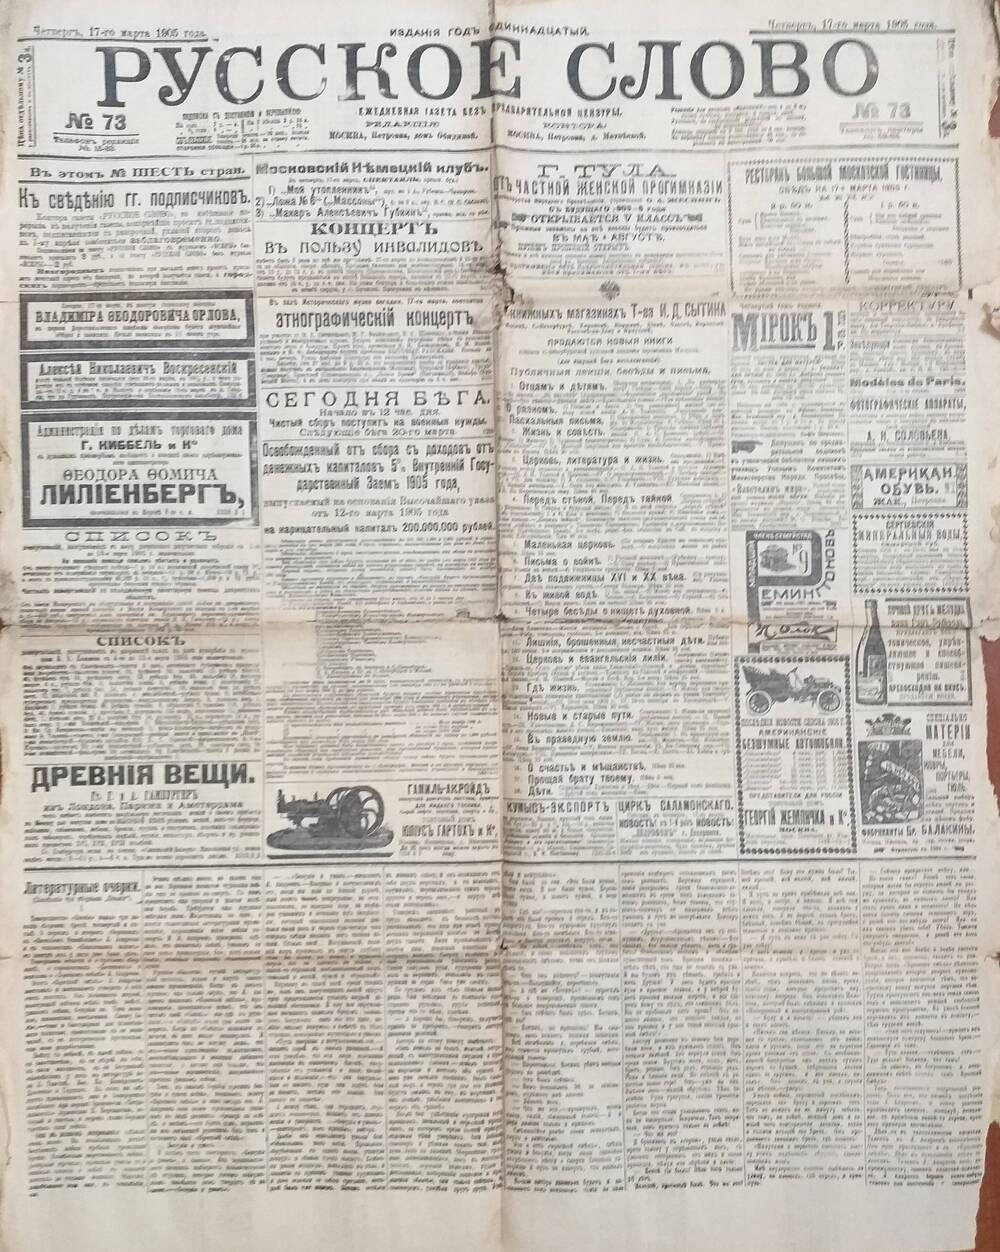 Газета Русское слово № 73 от 17.03.1905 года.